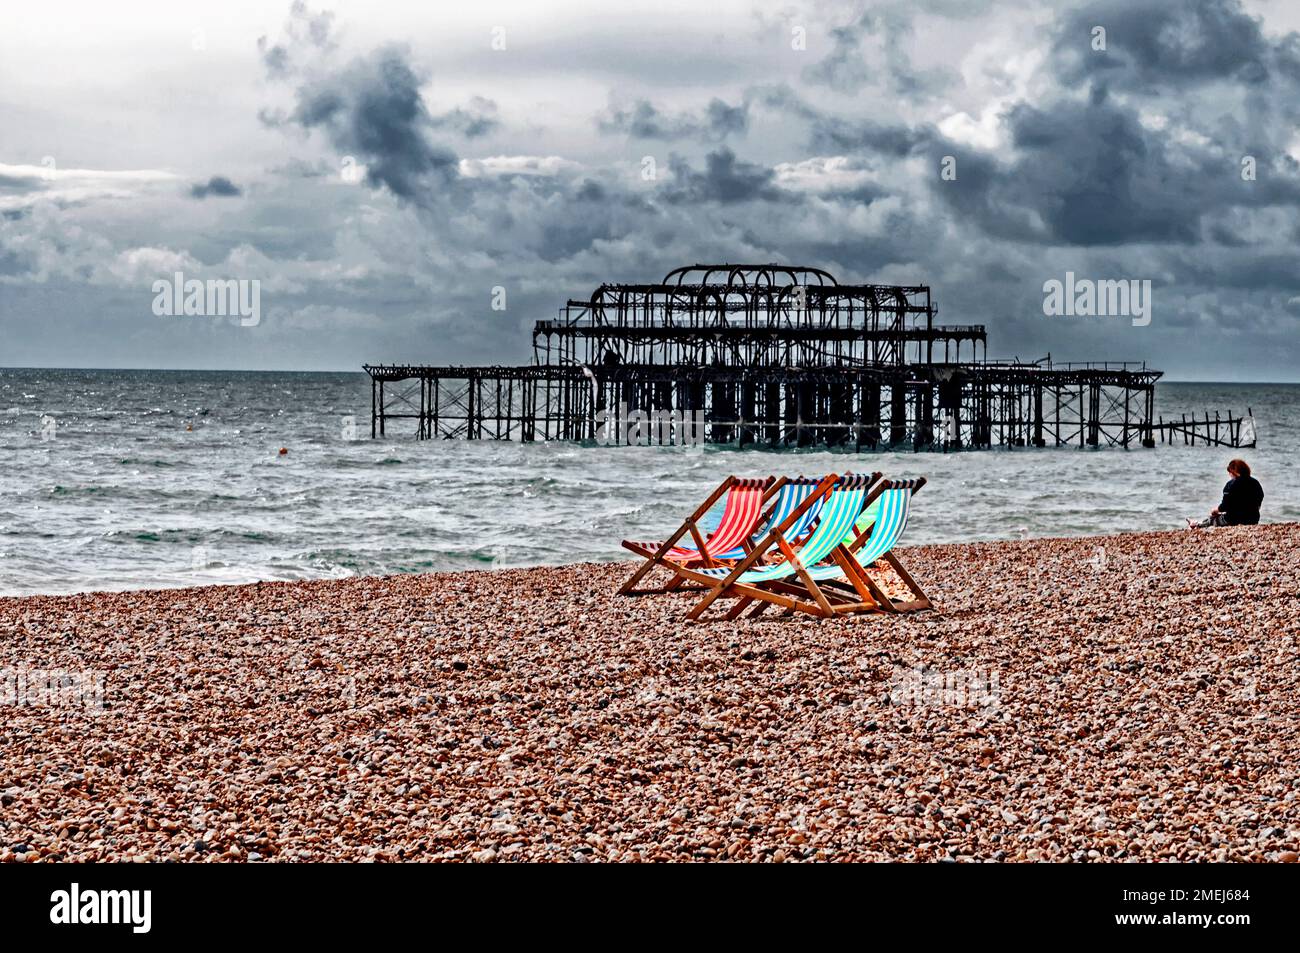 Brighton (England): Deckchairs on the beach;  Liegestühle am Strand in Brighton Stock Photo